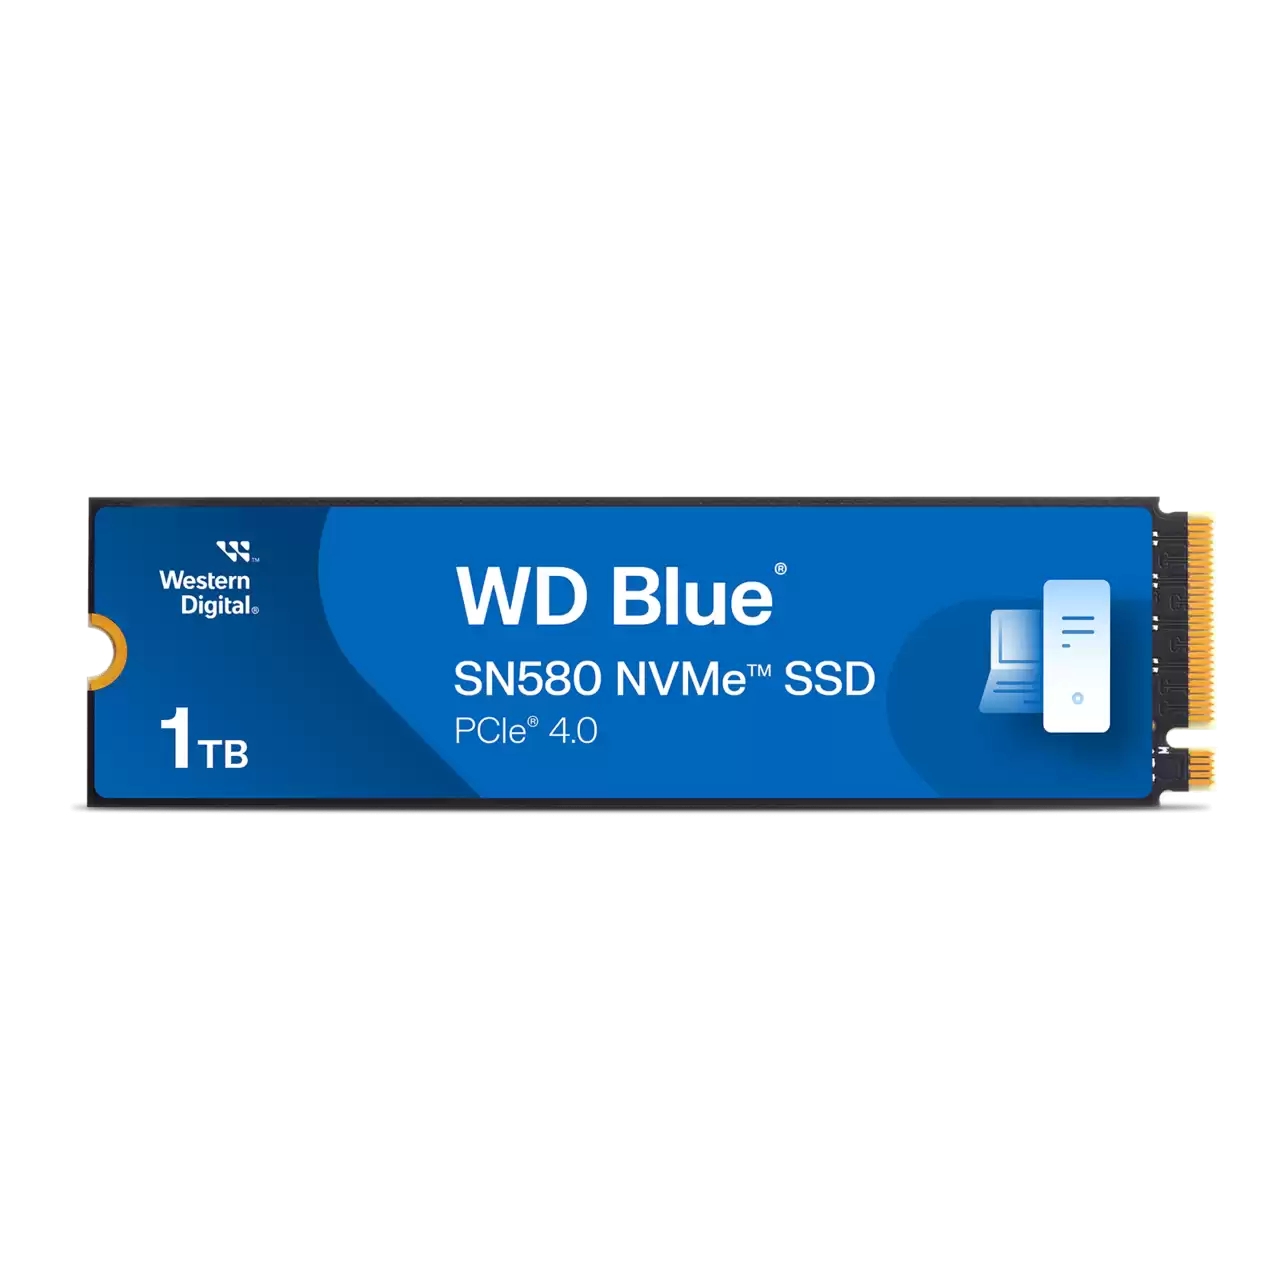 WD Blue™ SN580 1TB PCIe Gen 4 NVMe M.2 SSD